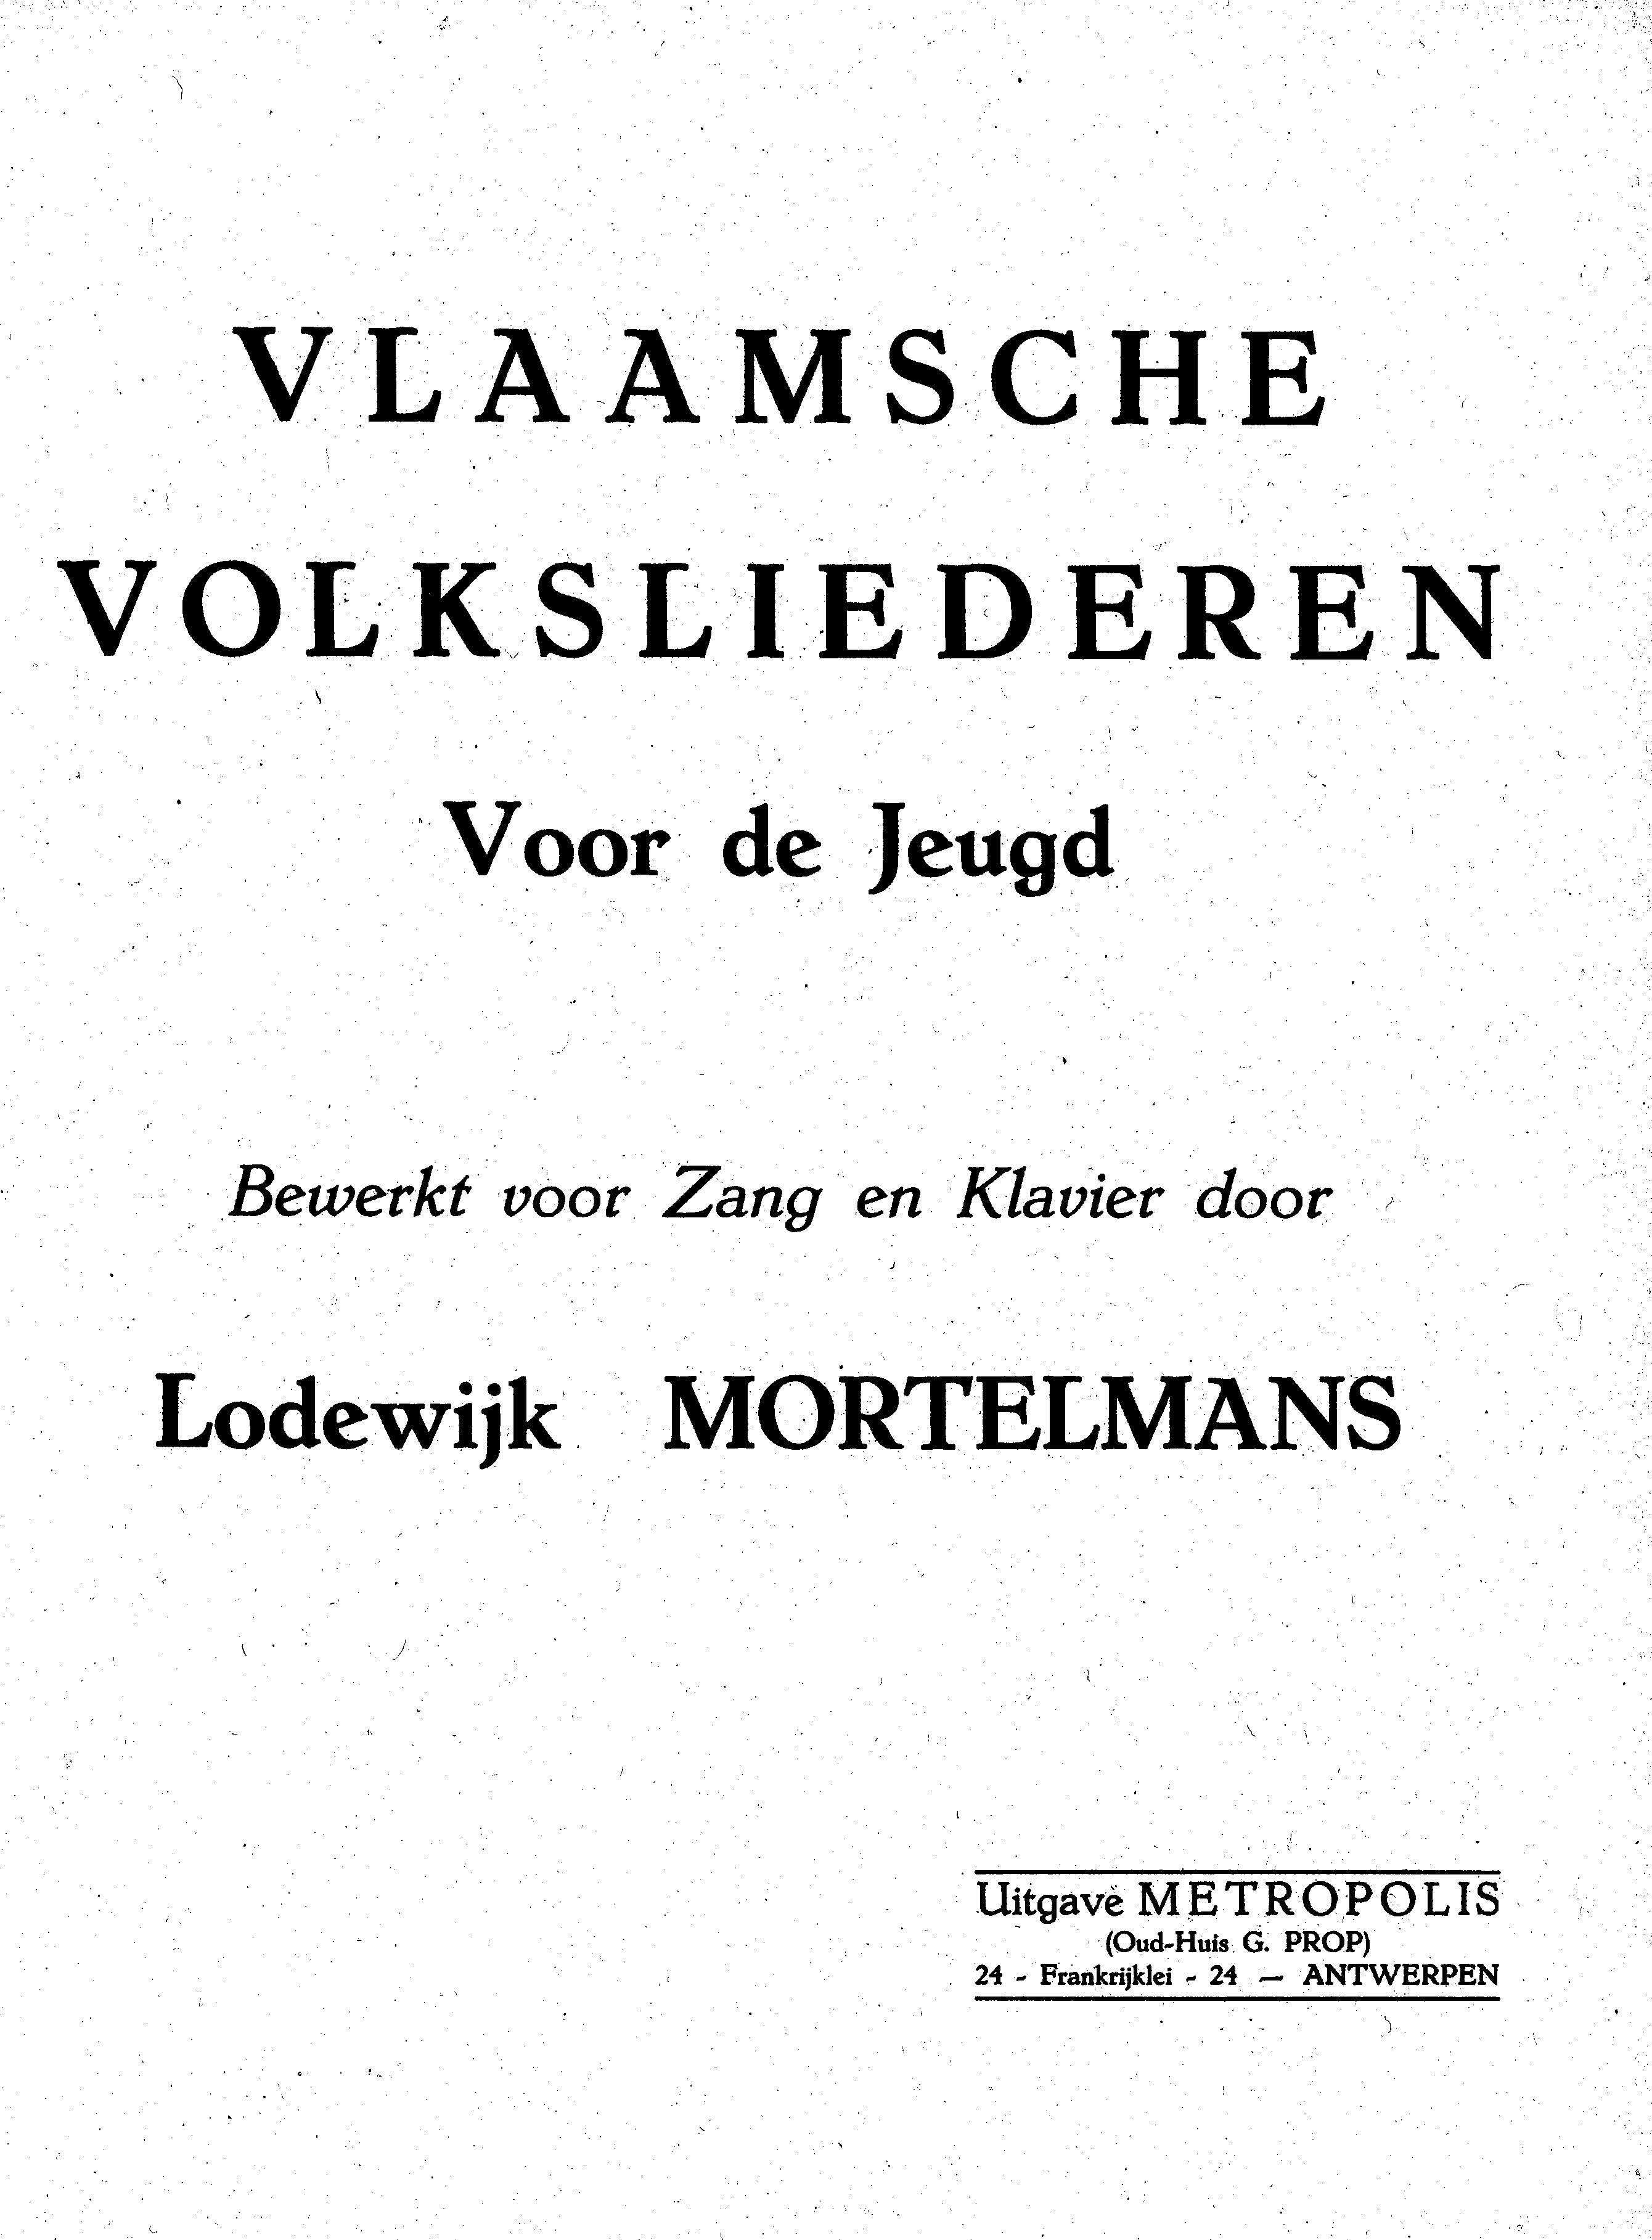 Vlaamsche Volksliederen Voor De Jeugd (MORTELMANS LODEWIJK)